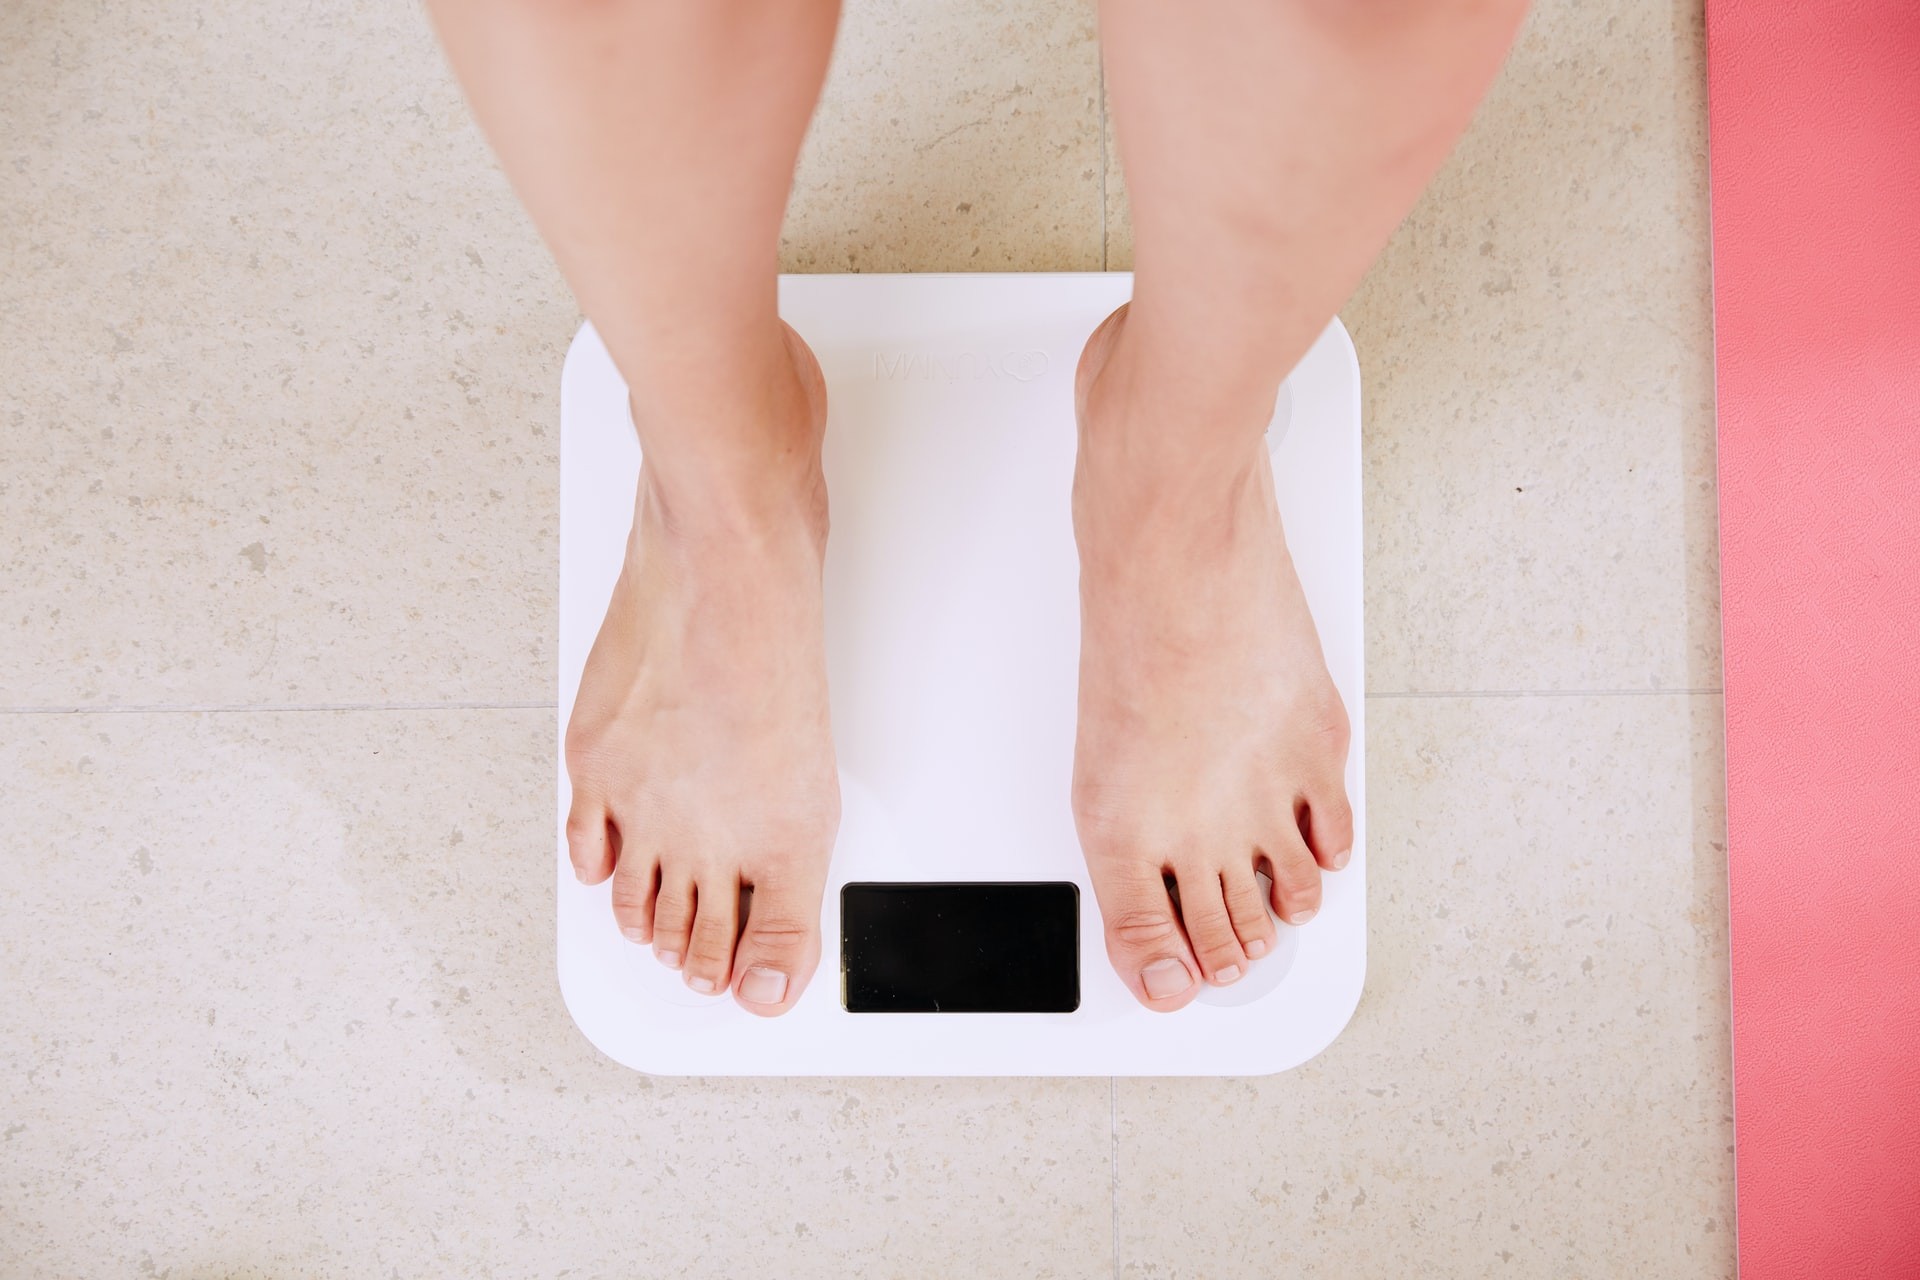 تحسين الهضم وتخفيف الوزن